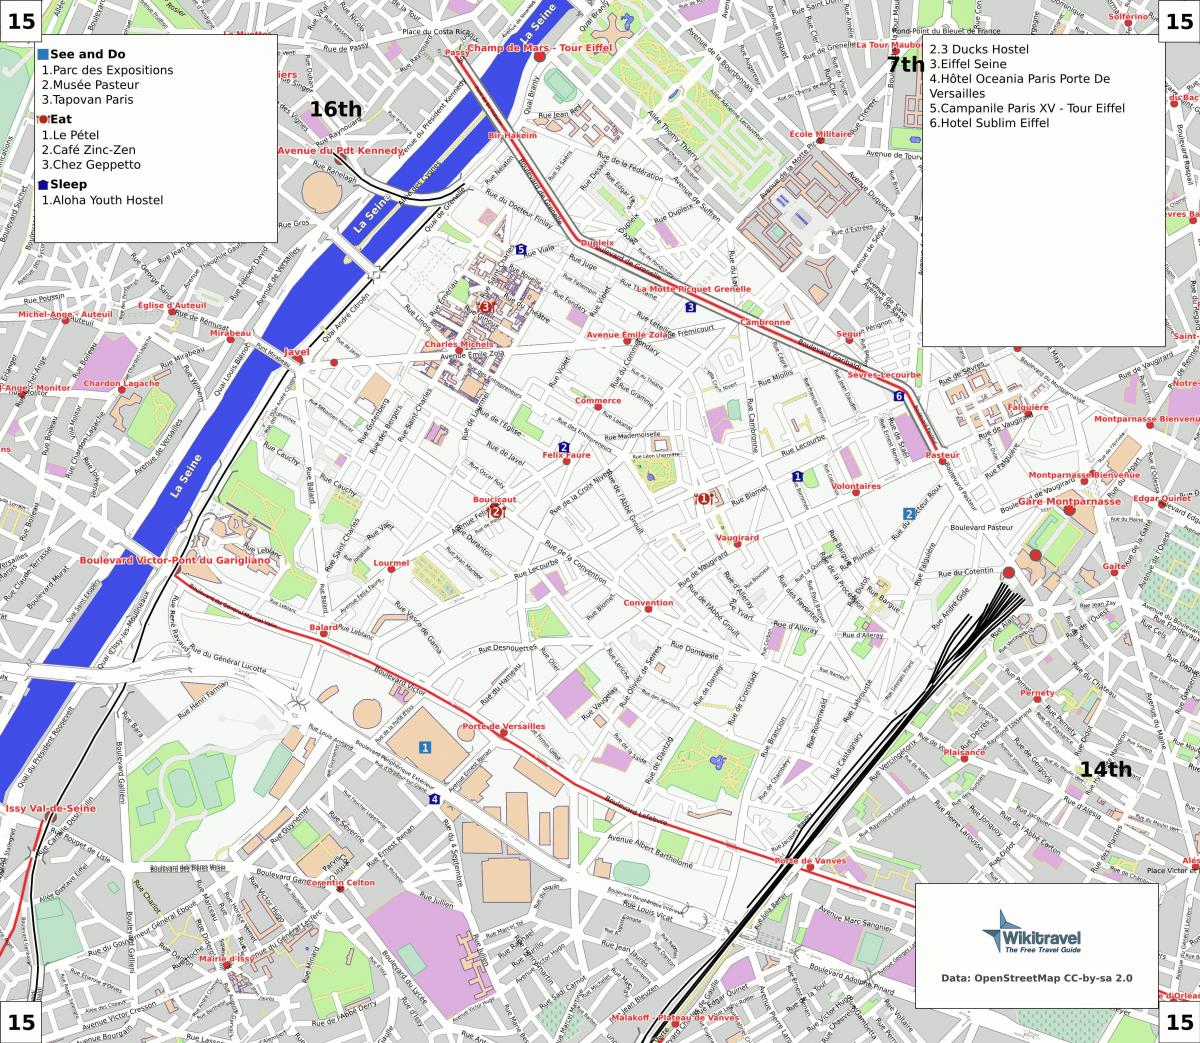 แผนที่ของวันที่ 15 arrondissement ของปารีส